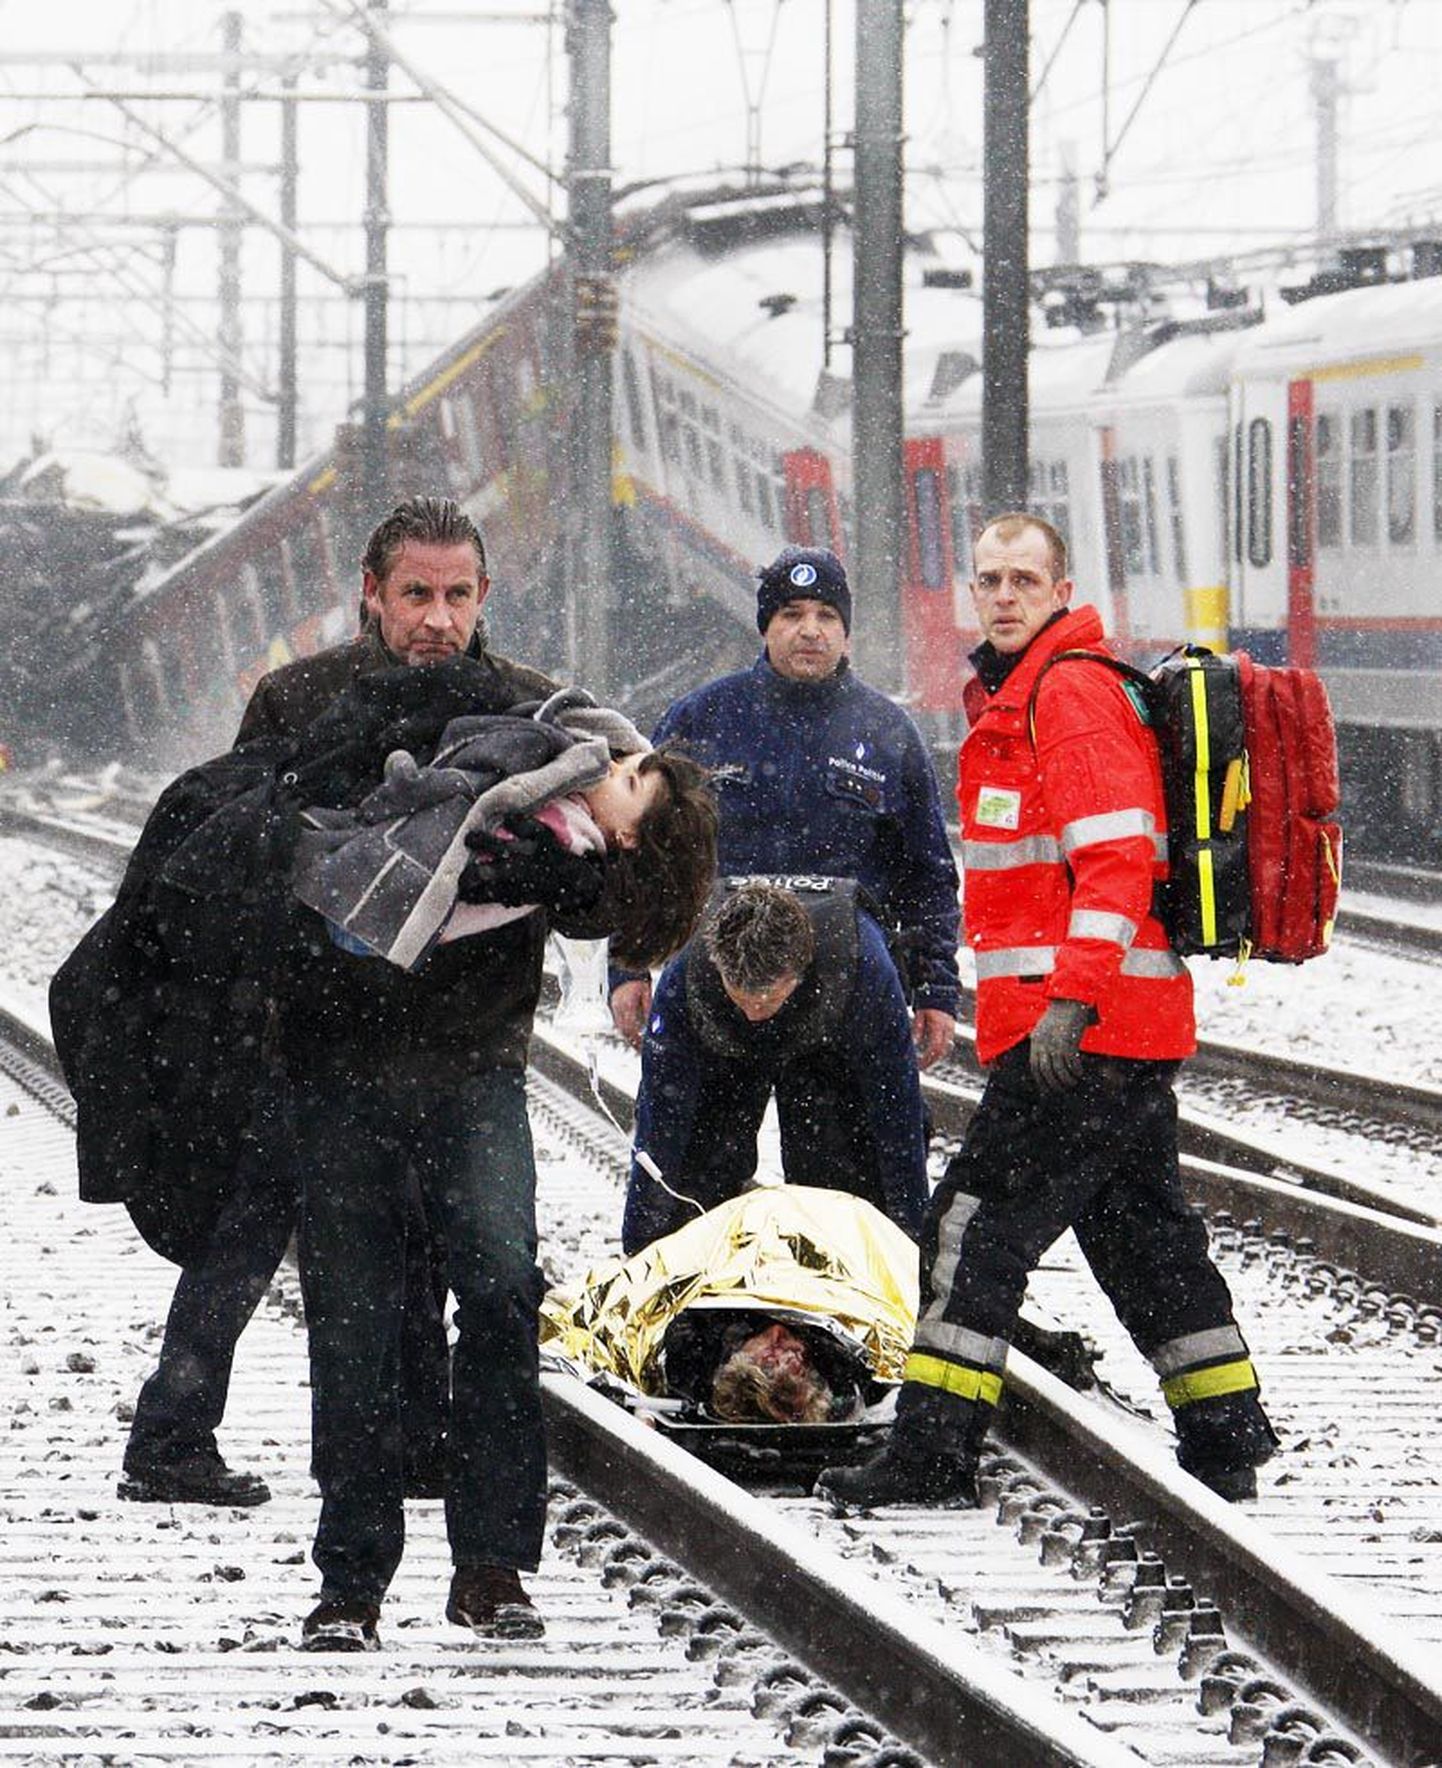 Mees kõnnib, laps süles, õnnetuskohast eemale. Taustal abistavad päästjad üht enam kui sajast eilses Brüsseli rongiõnnetuses kannatada saanud inimesest.